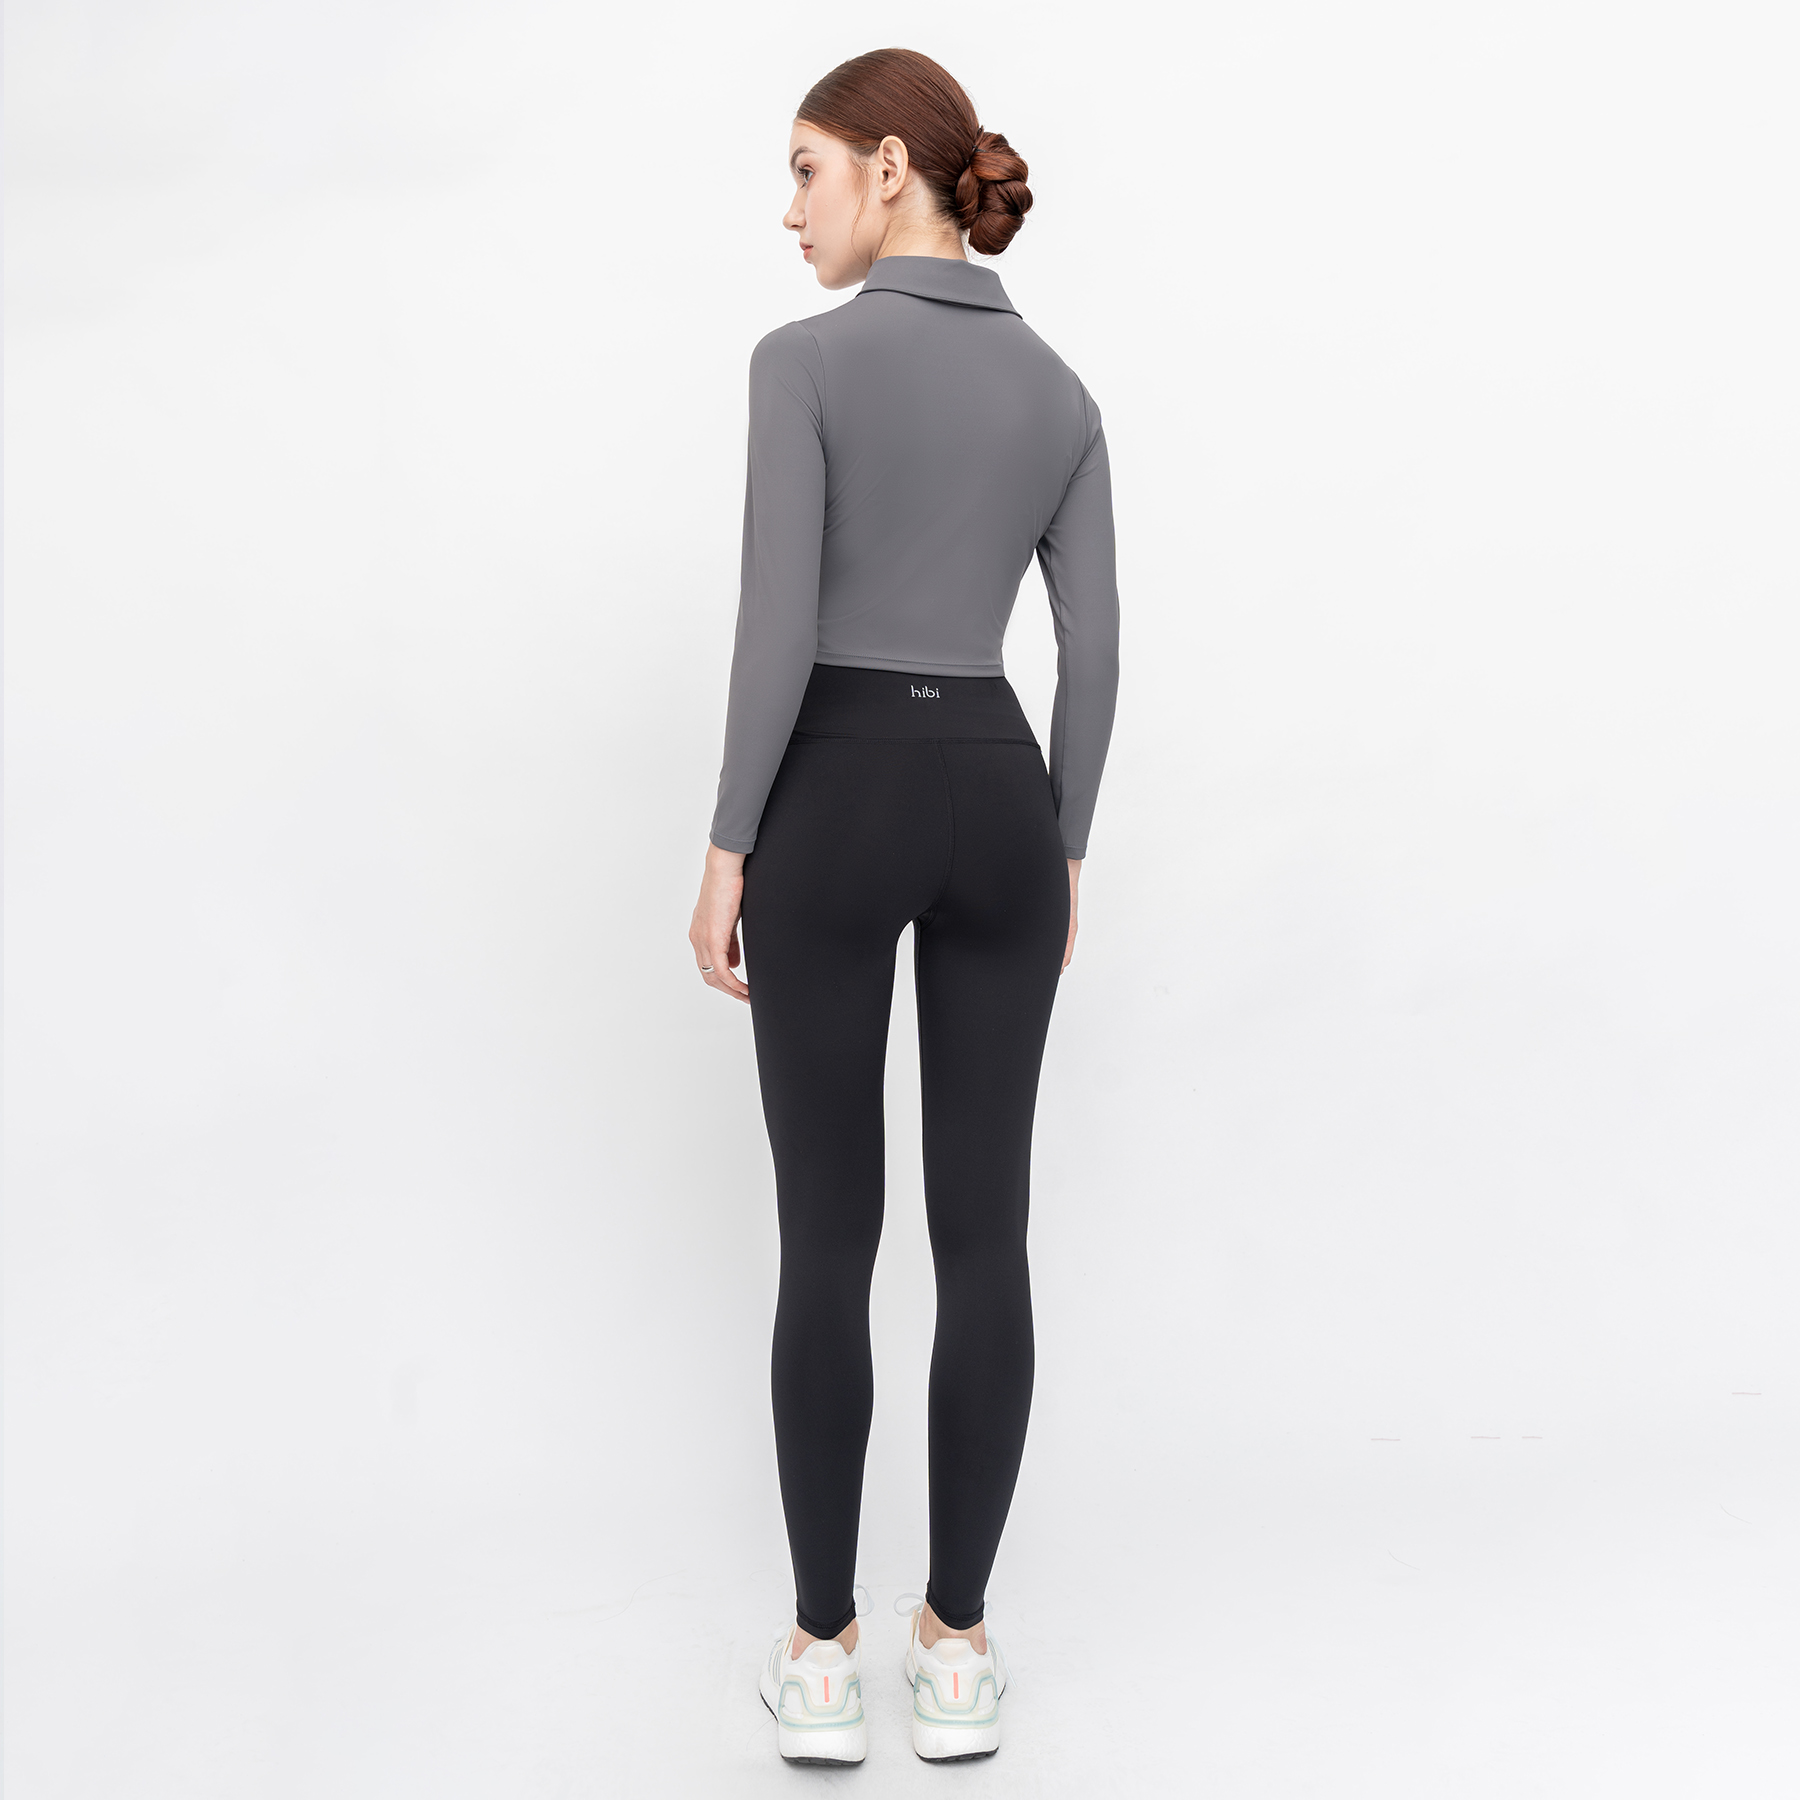 Áo Tập Yoga Gym Hibi Sports CR818 Kiểu Tay dài Cổ Bẻ Bấm Nút, Kèm Mút Ngực